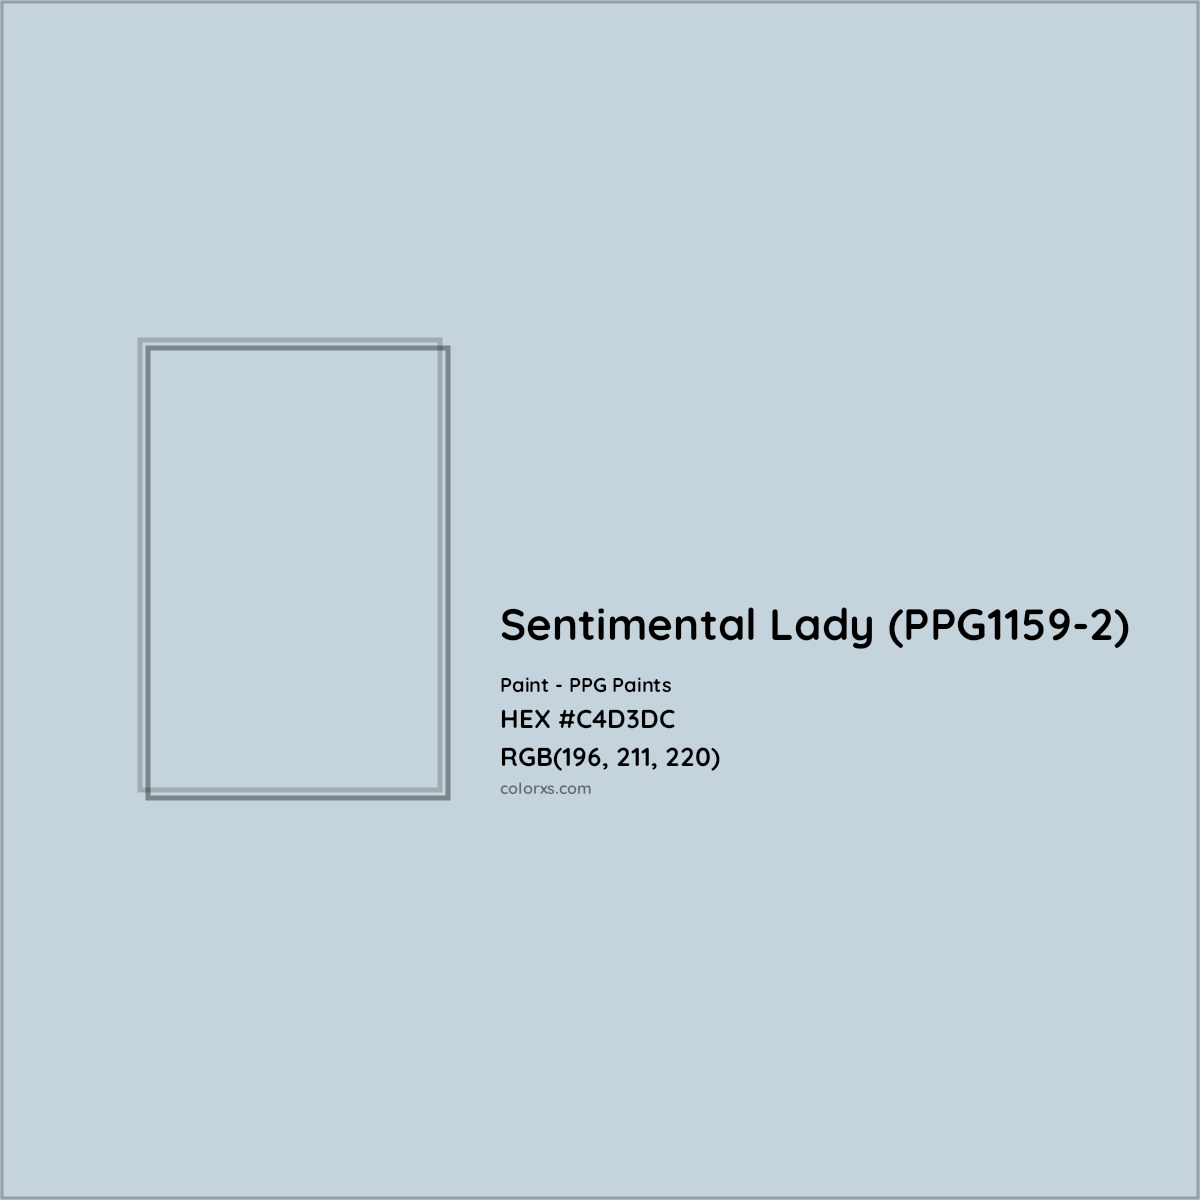 HEX #C4D3DC Sentimental Lady (PPG1159-2) Paint PPG Paints - Color Code